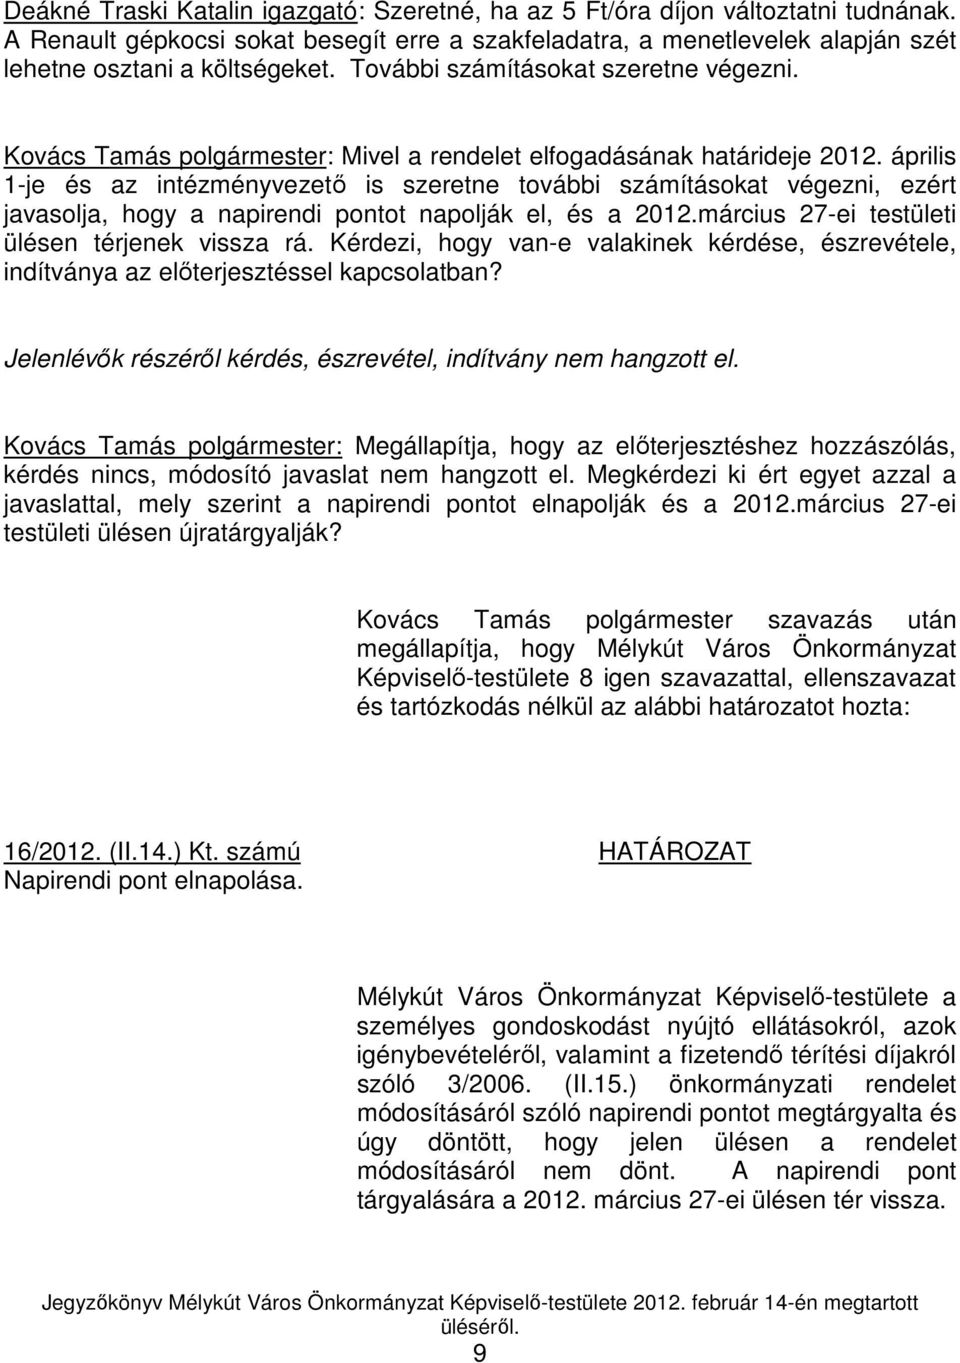 április 1-je és az intézményvezetı is szeretne további számításokat végezni, ezért javasolja, hogy a napirendi pontot napolják el, és a 2012.március 27-ei testületi ülésen térjenek vissza rá.